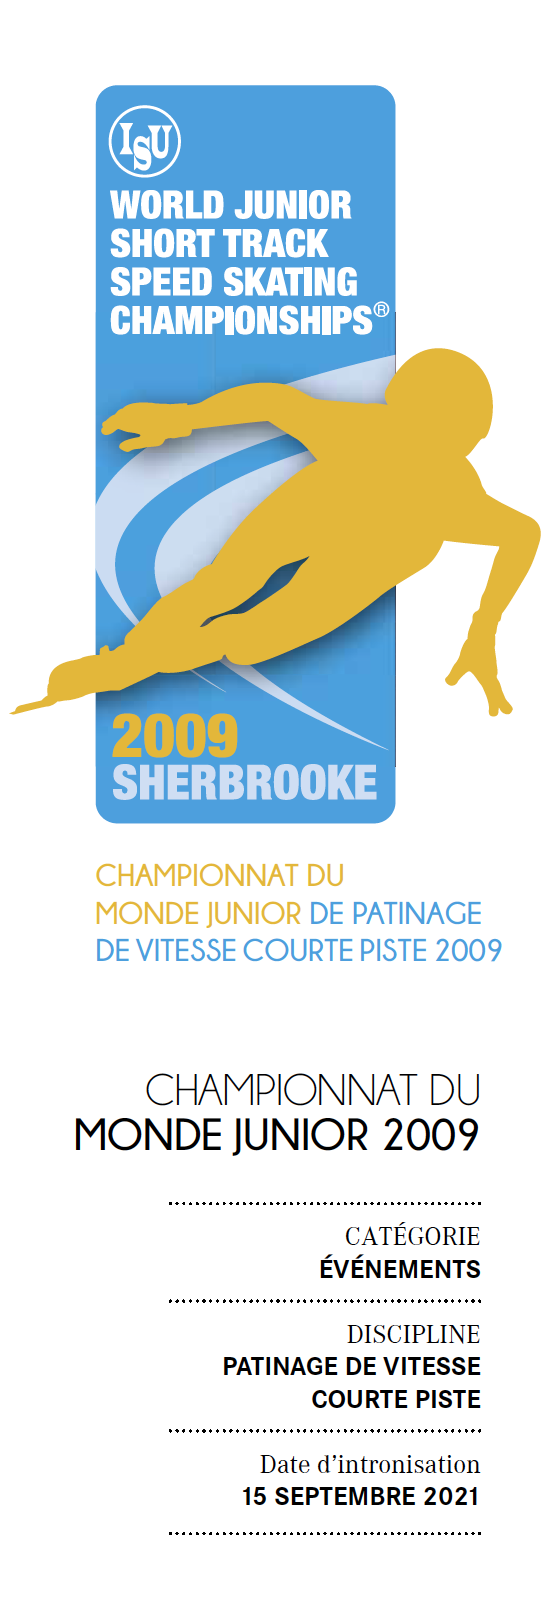 Championnat du monde junior 2009 de patinage de vitesse